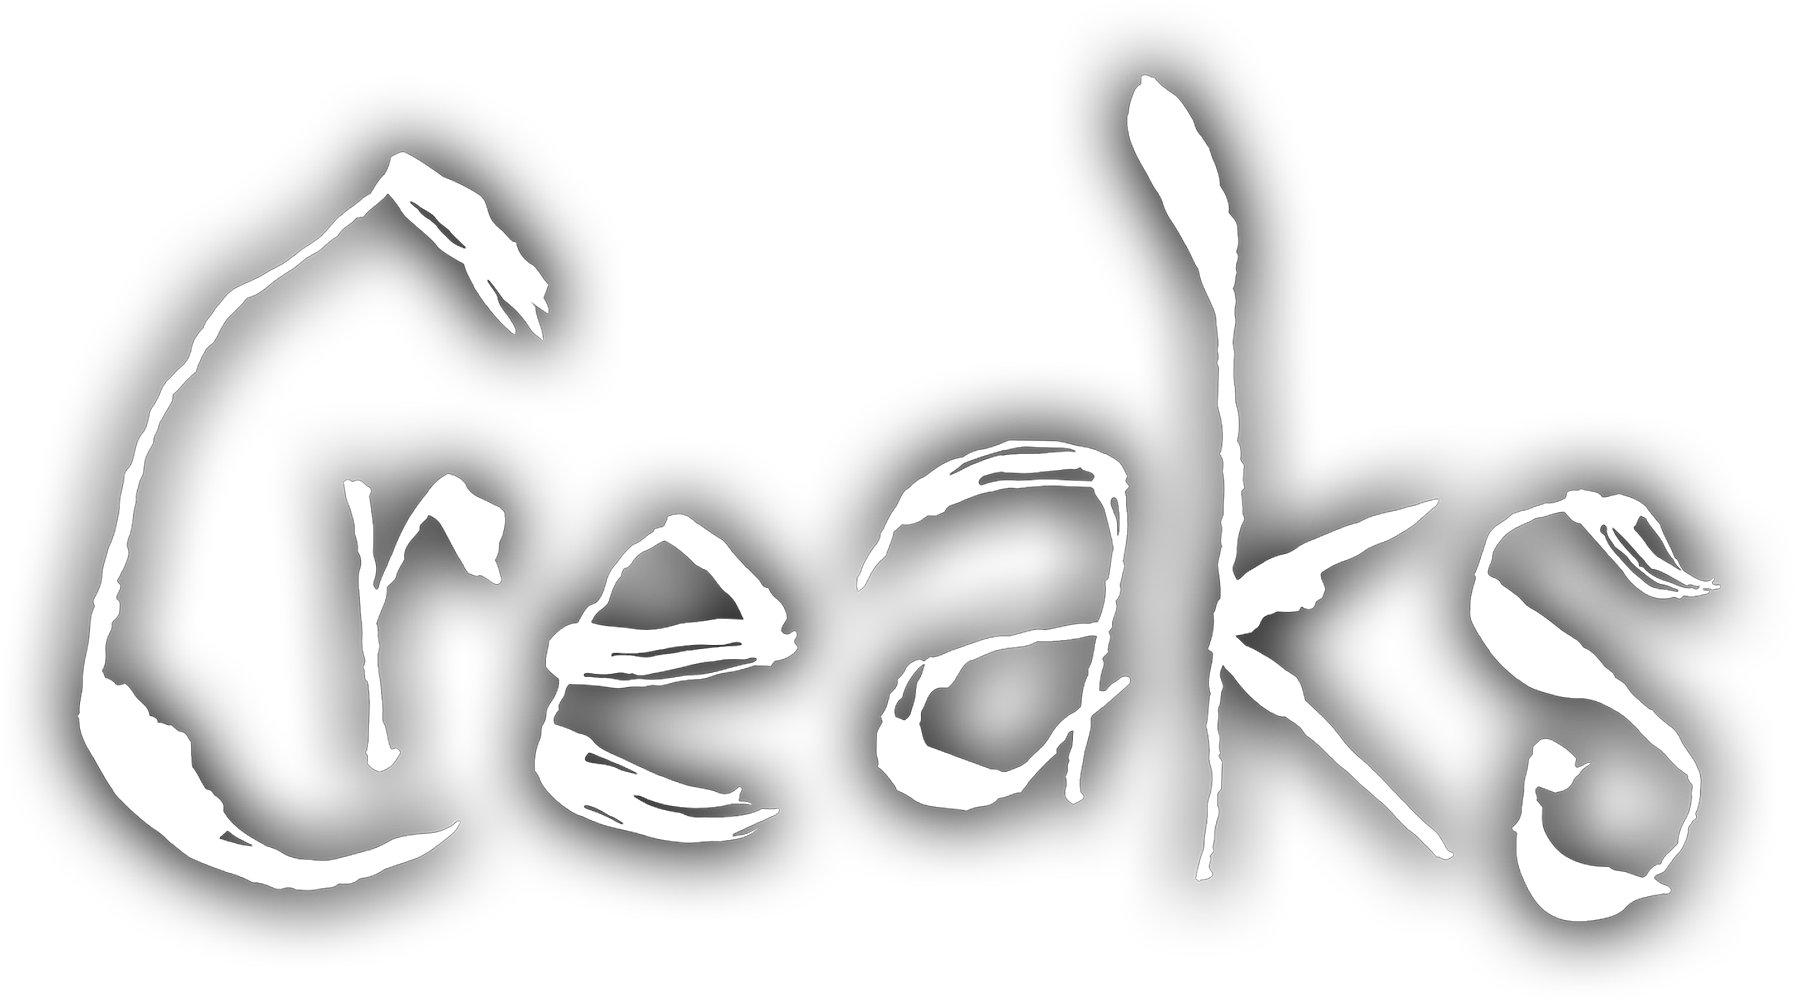 Creaks logo